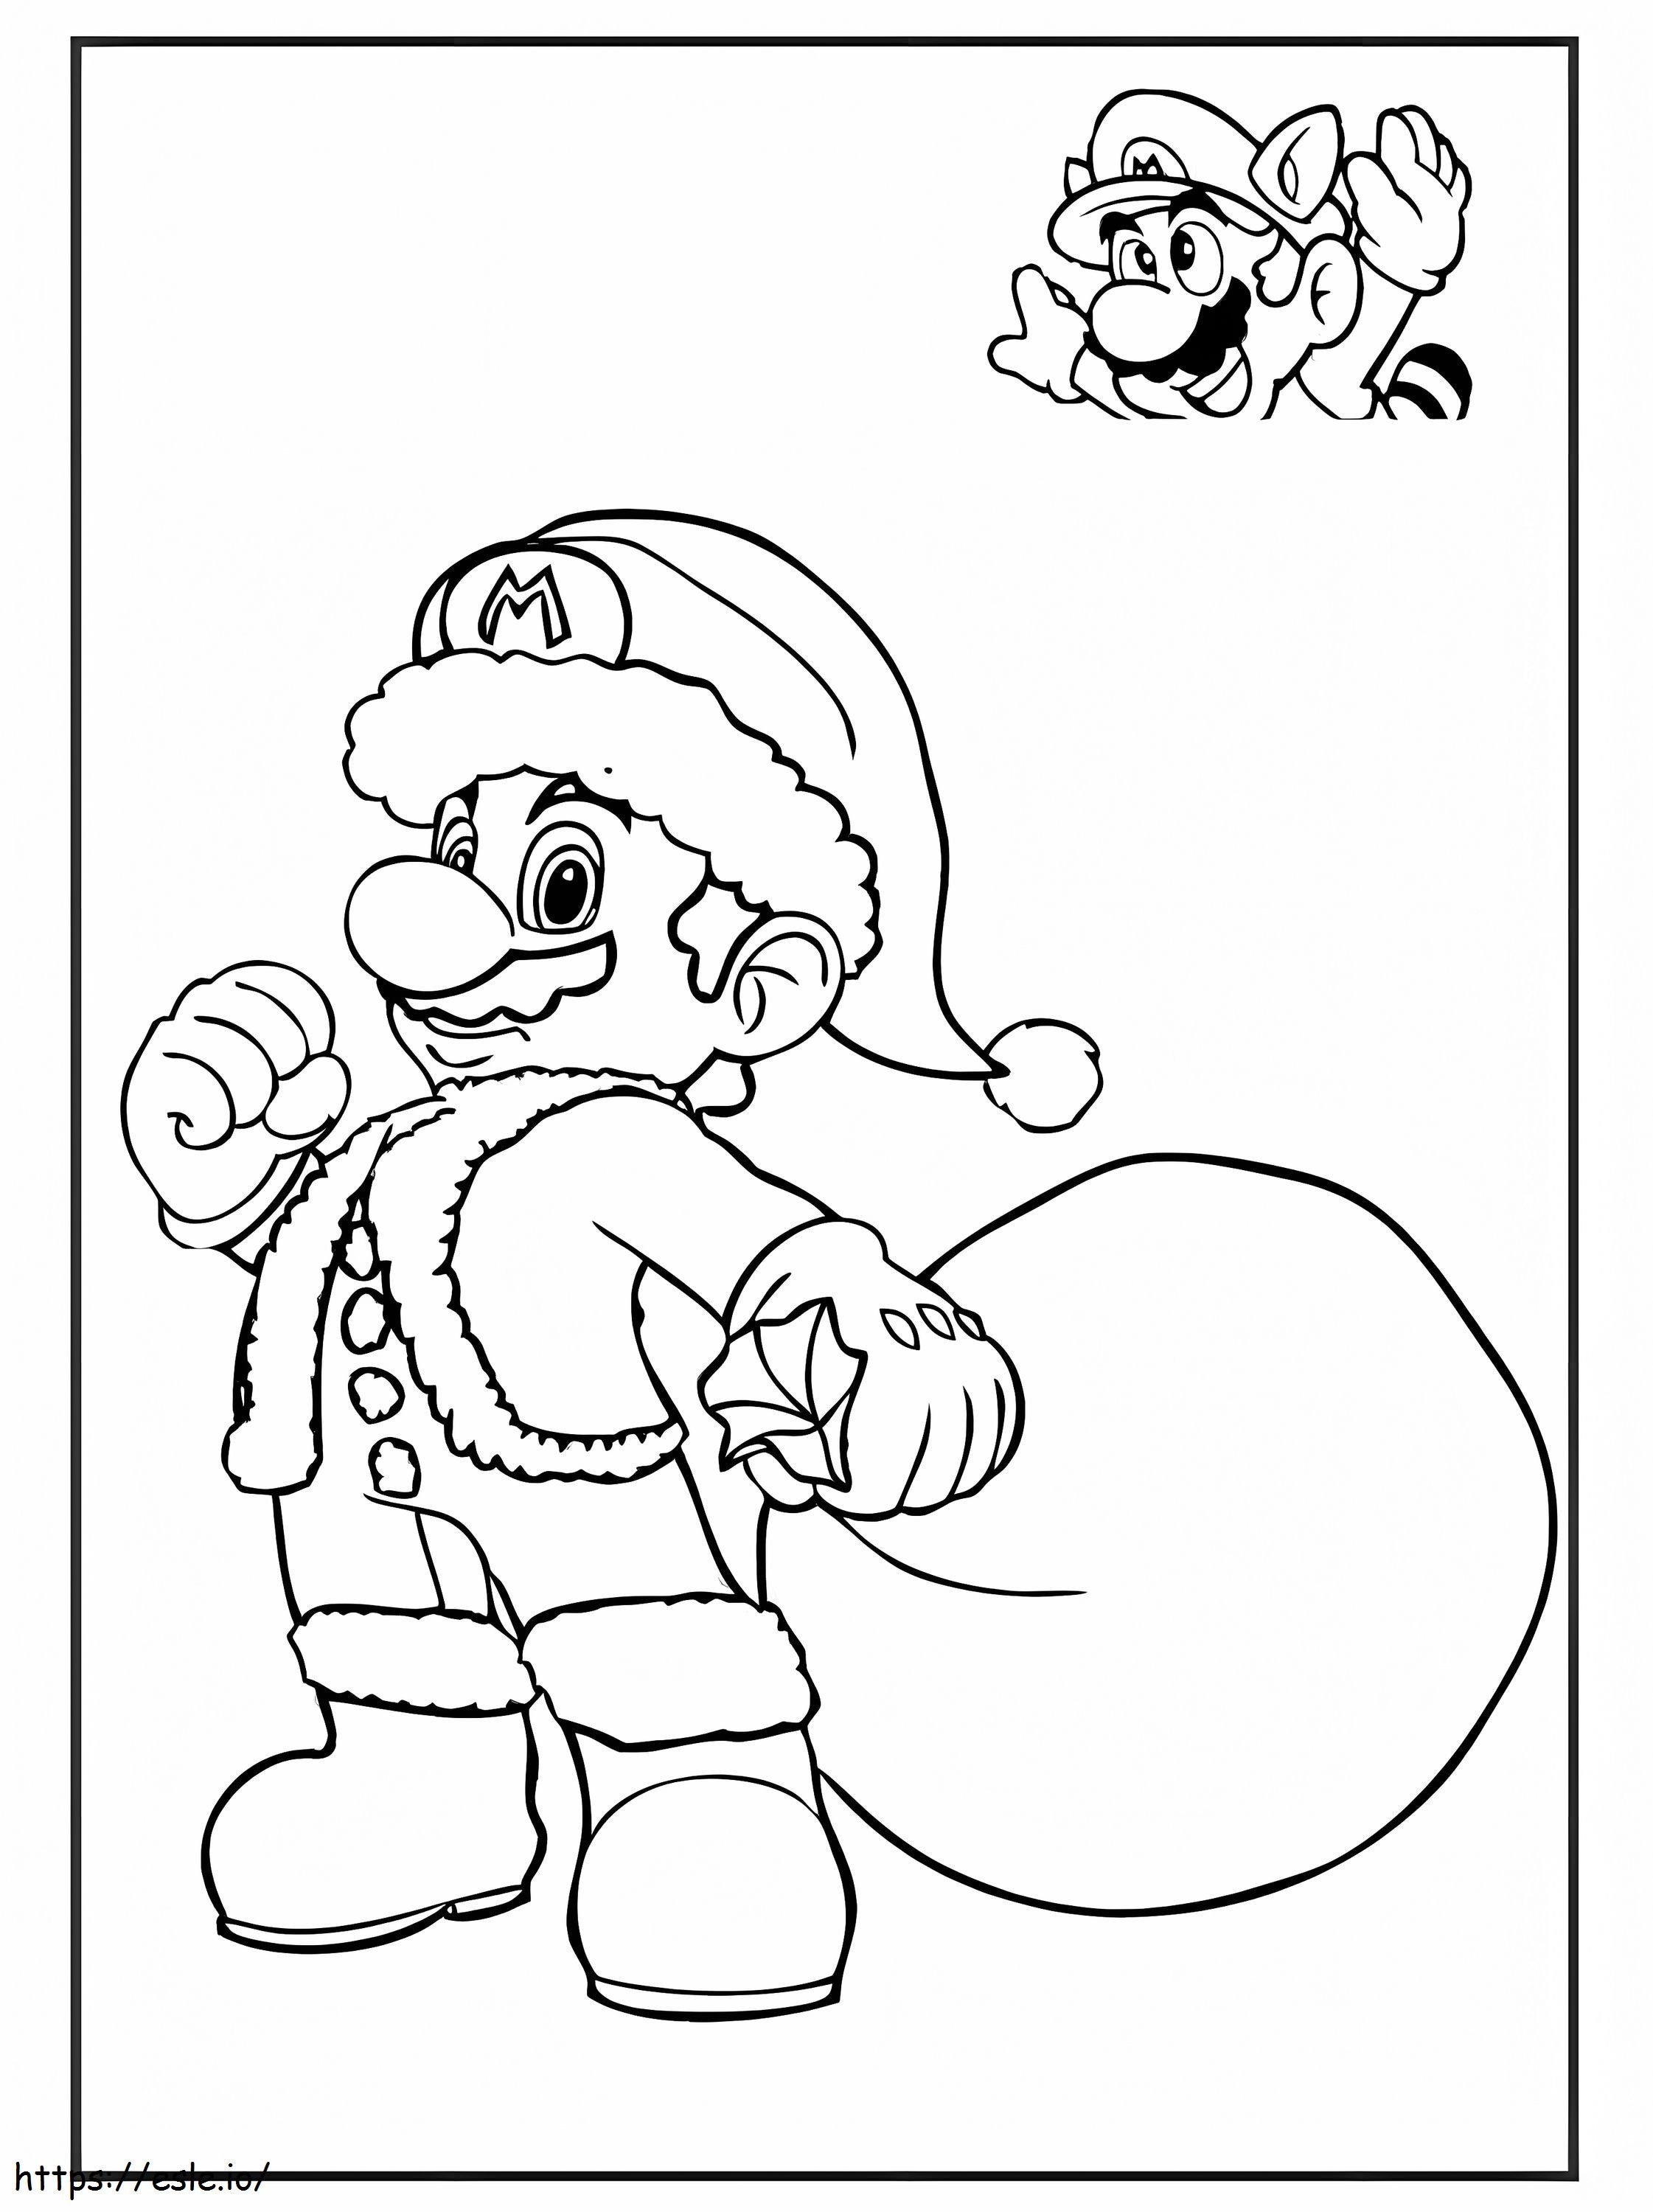 Santa Mario coloring page